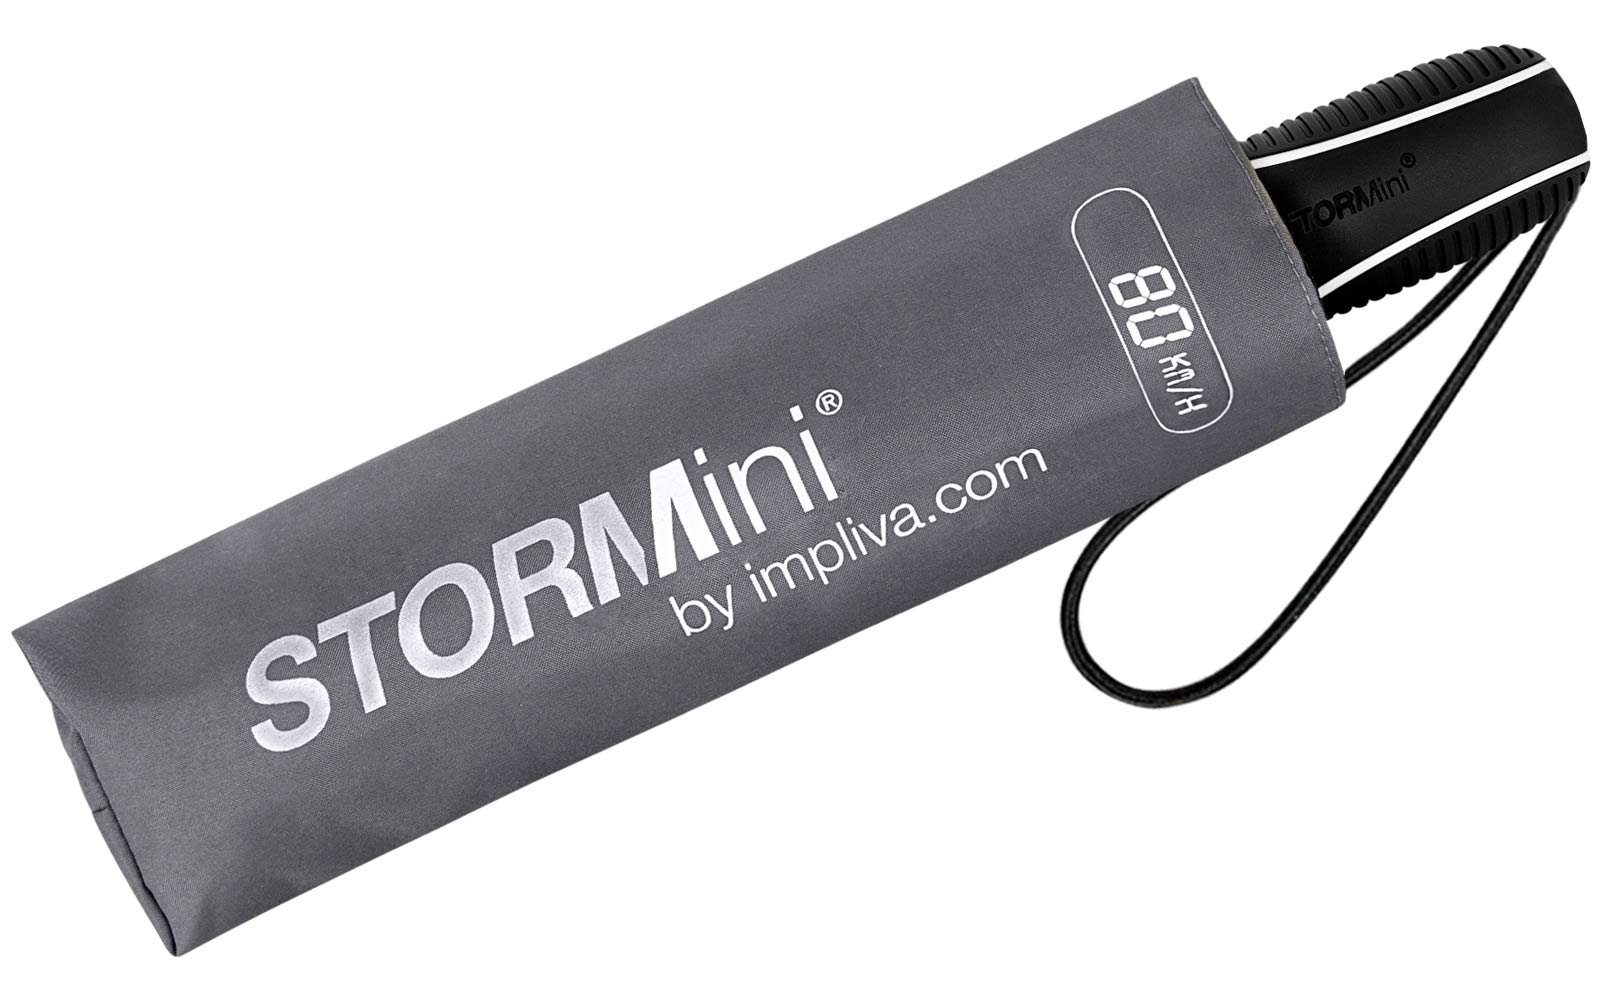 Impliva Taschenregenschirm STORMini aerodynamischer Schirm Form zu Wind, in hält Sturmschirm, durch grau sich 80 der dreht besondere aus den km/h bis seine